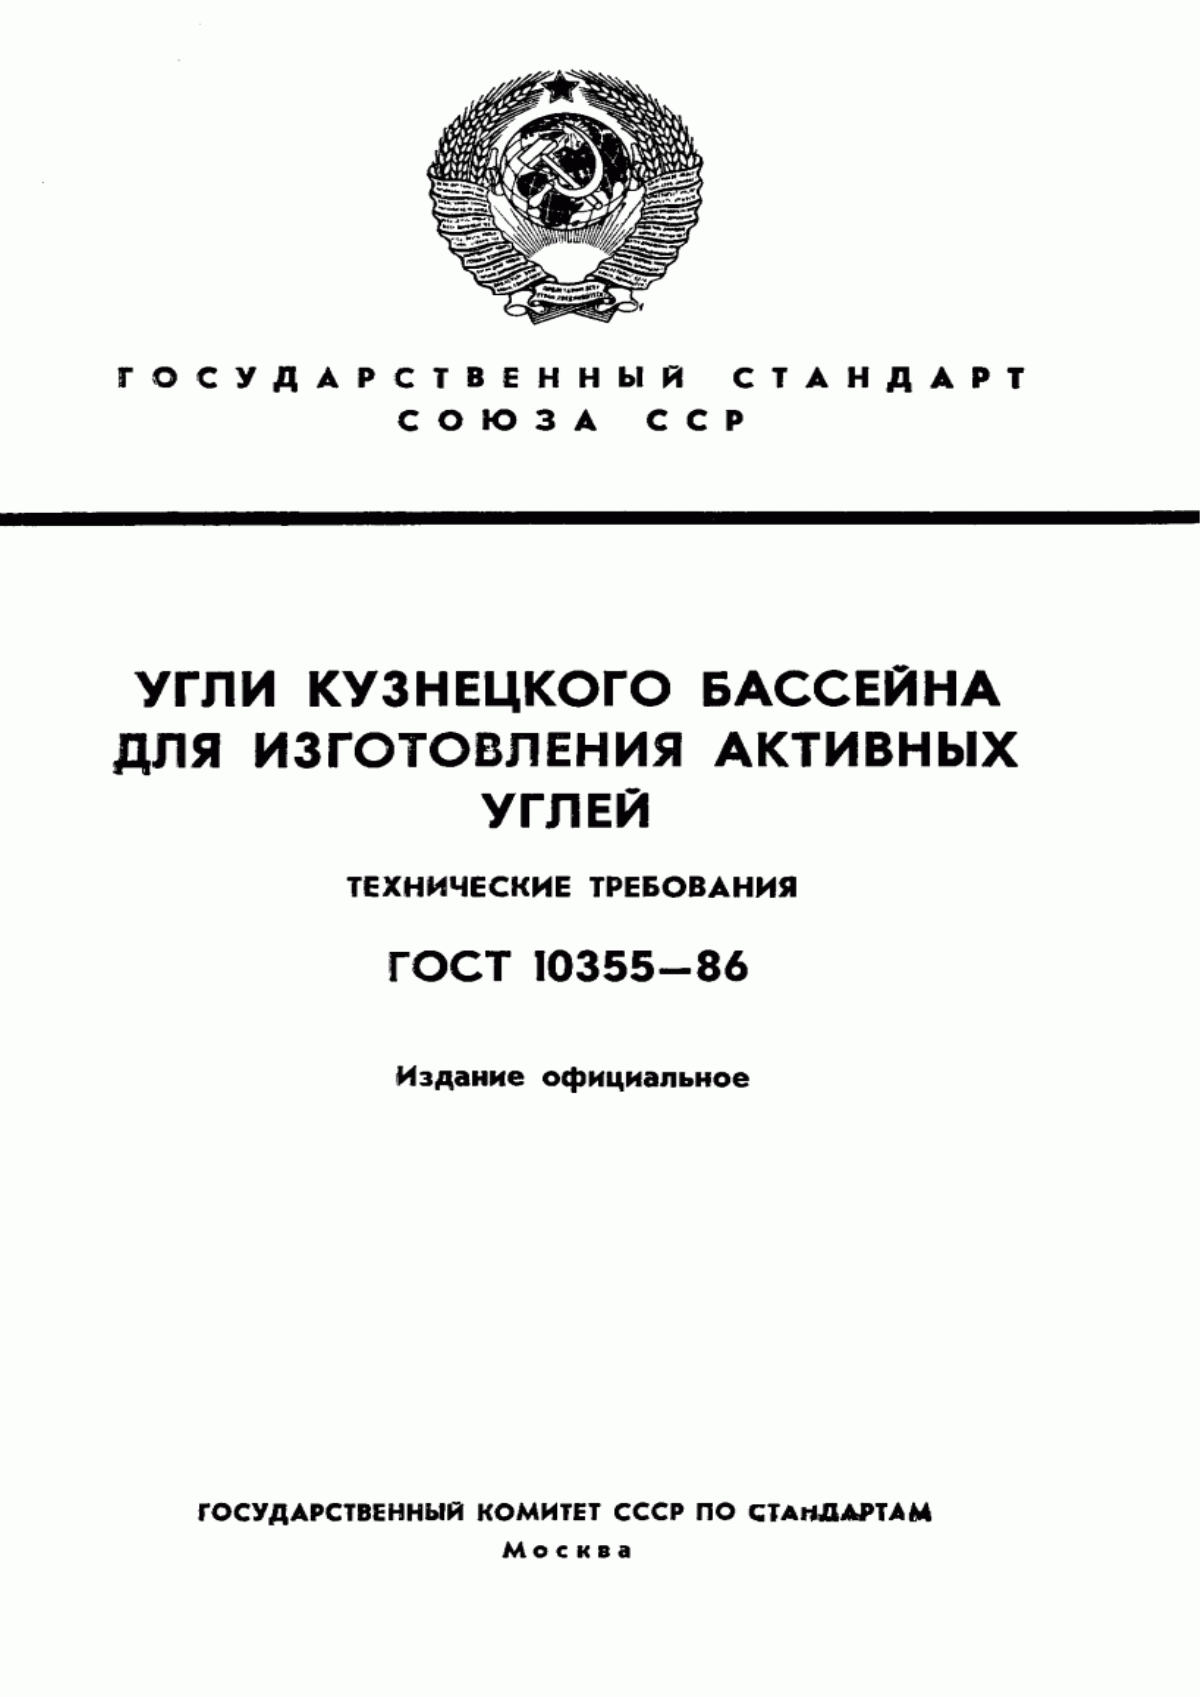 ГОСТ 10355-86 Угли Кузнецкого бассейна для изготовления активных углей. Технические требования